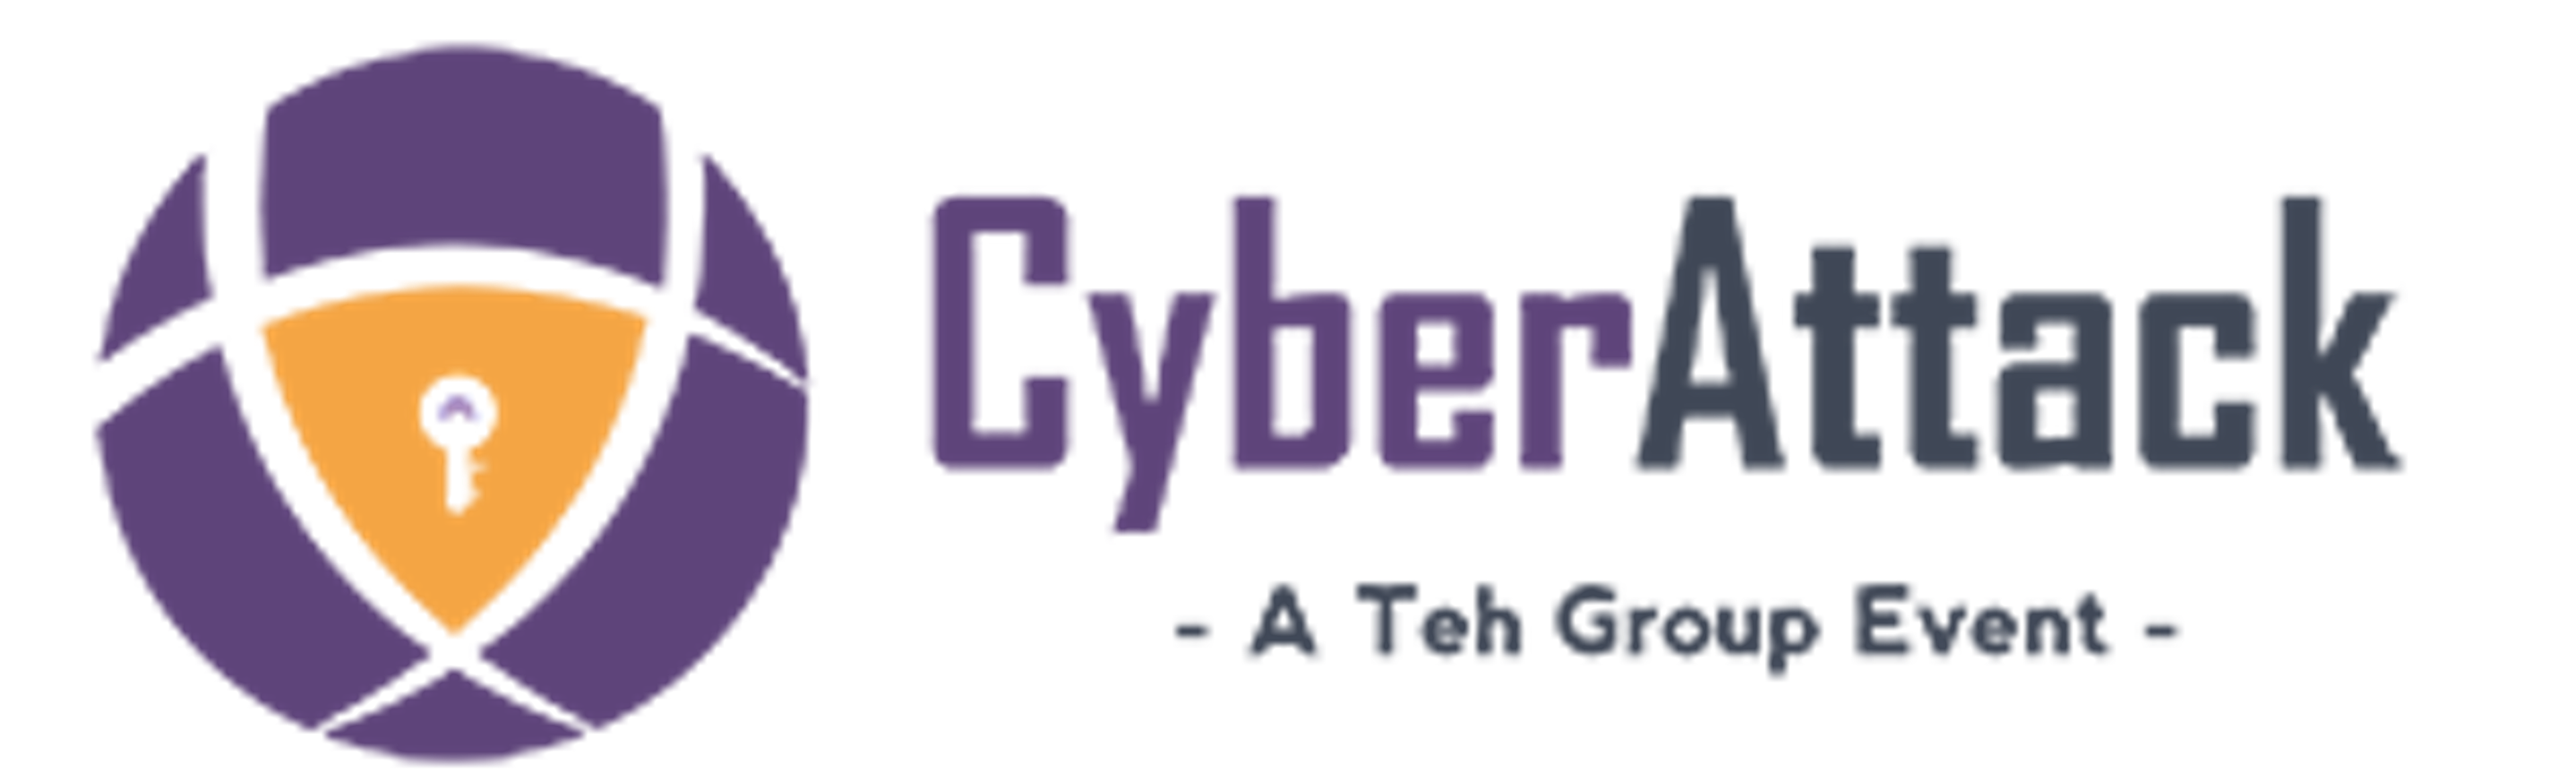 Cyberattack-event.com